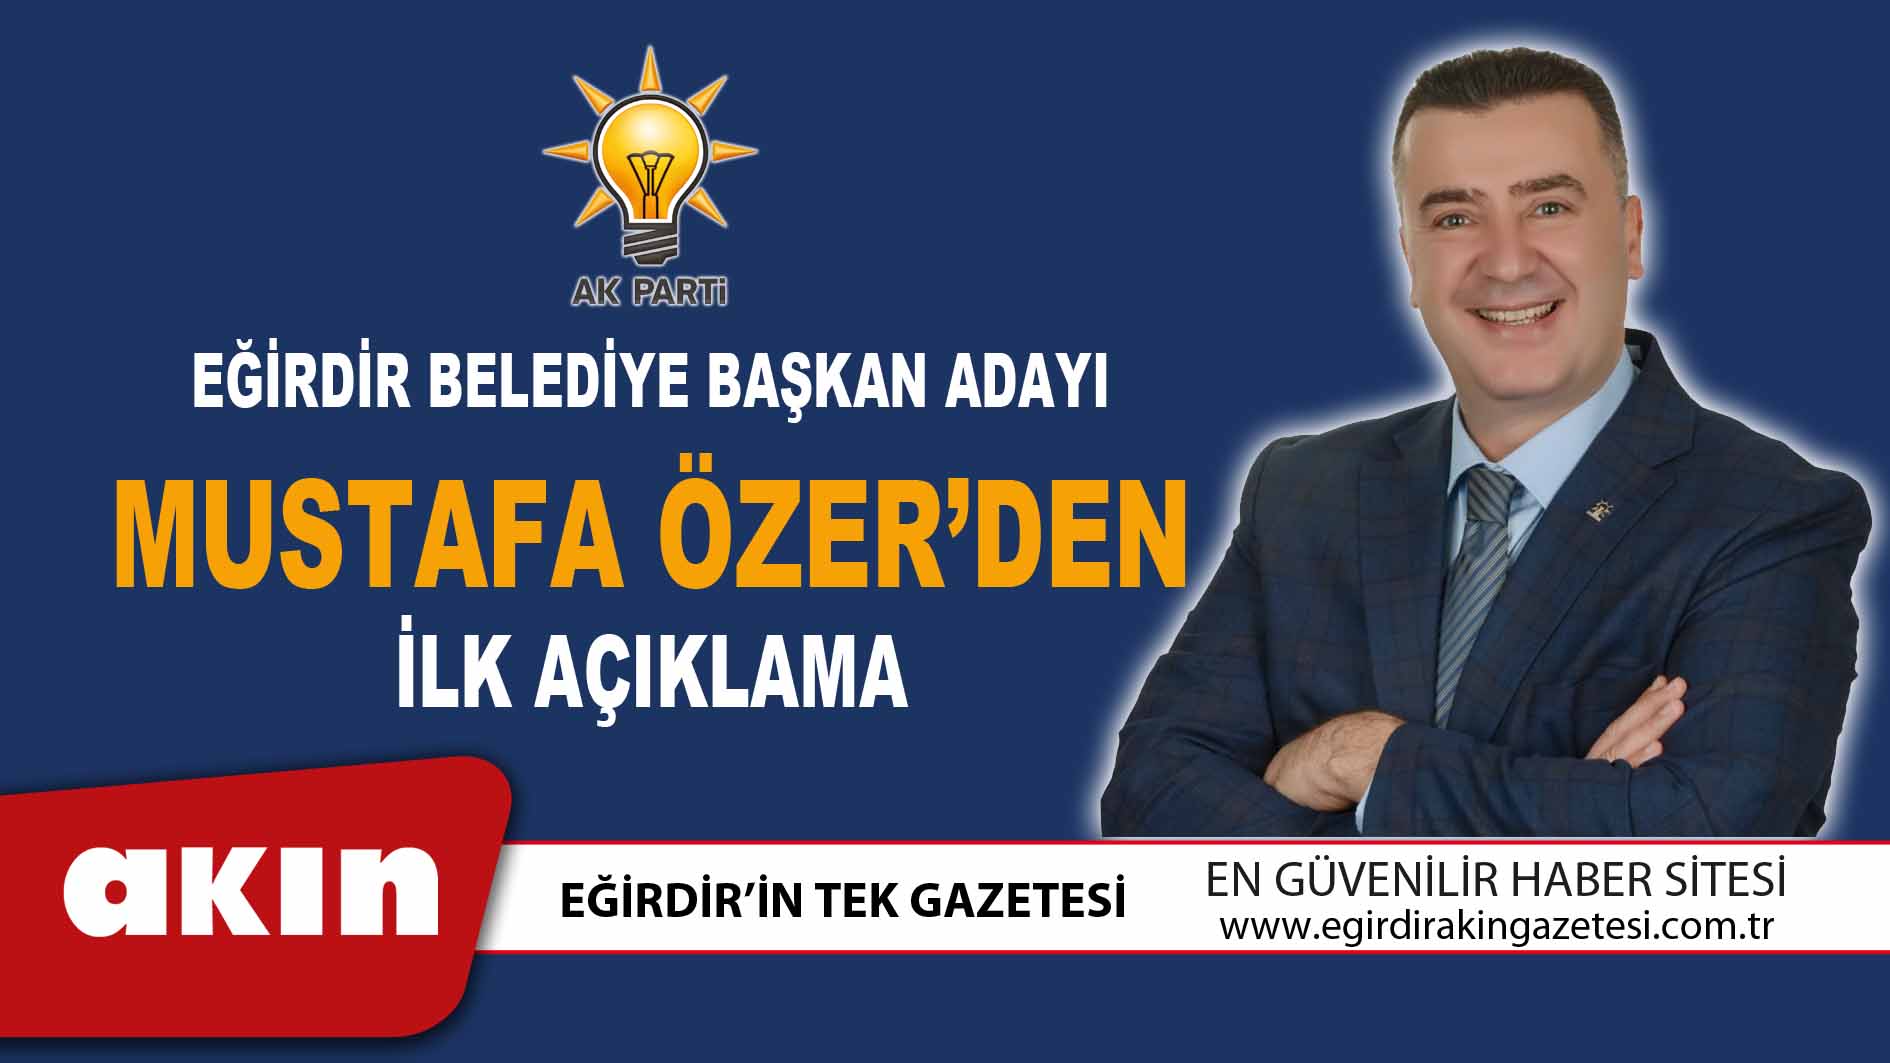 Eğirdir Belediye Başkan Adayı Mustafa Özer’den İlk Açıklama